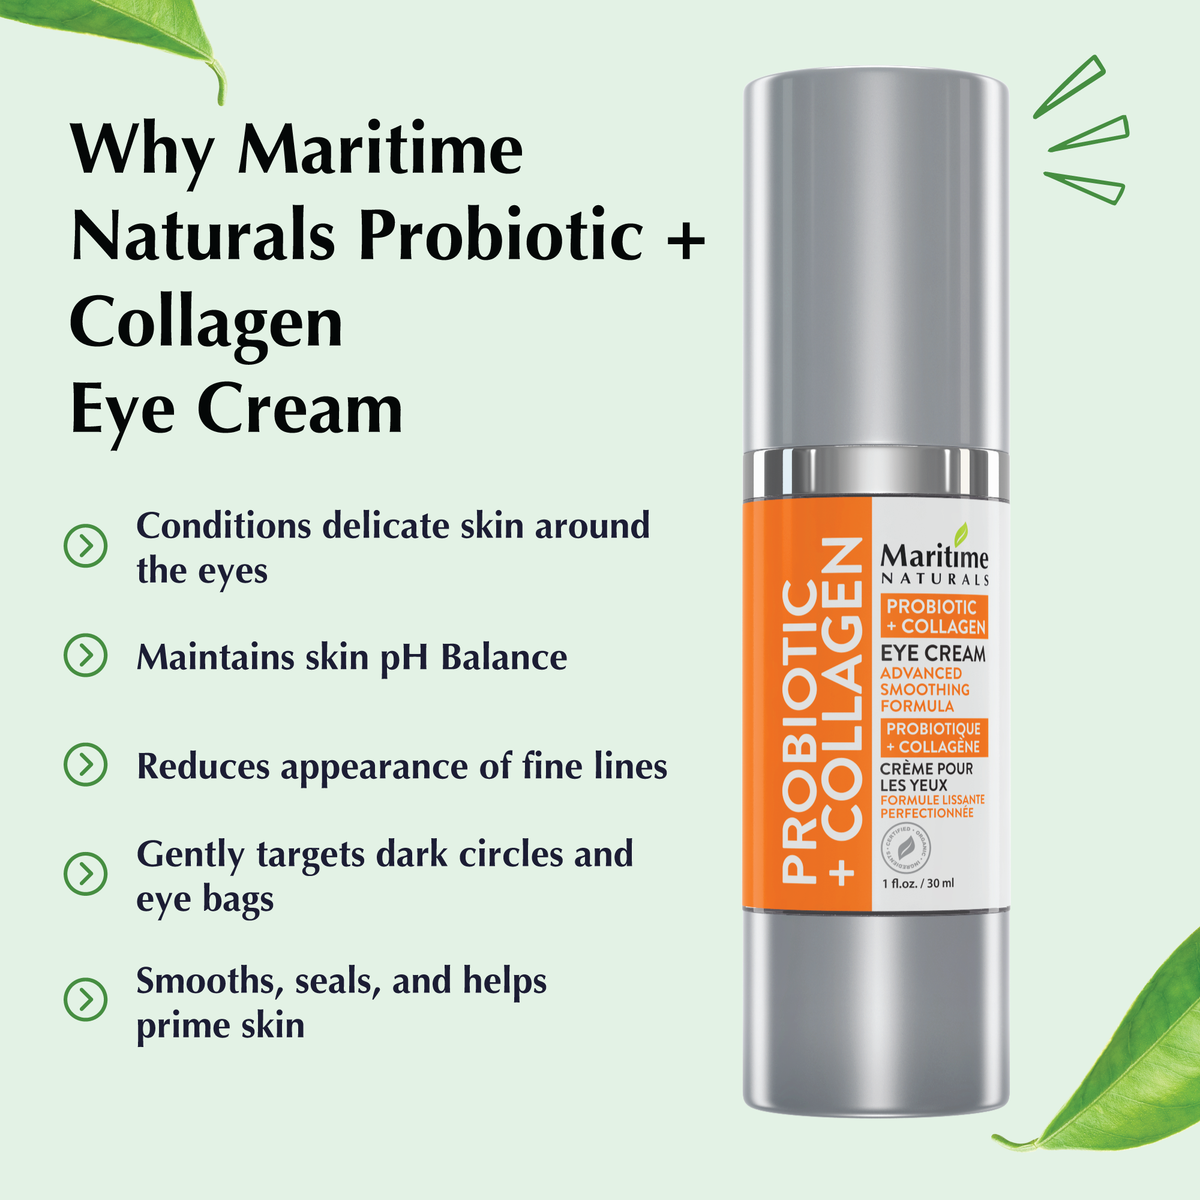 Probiotic + Collagen Eye Cream